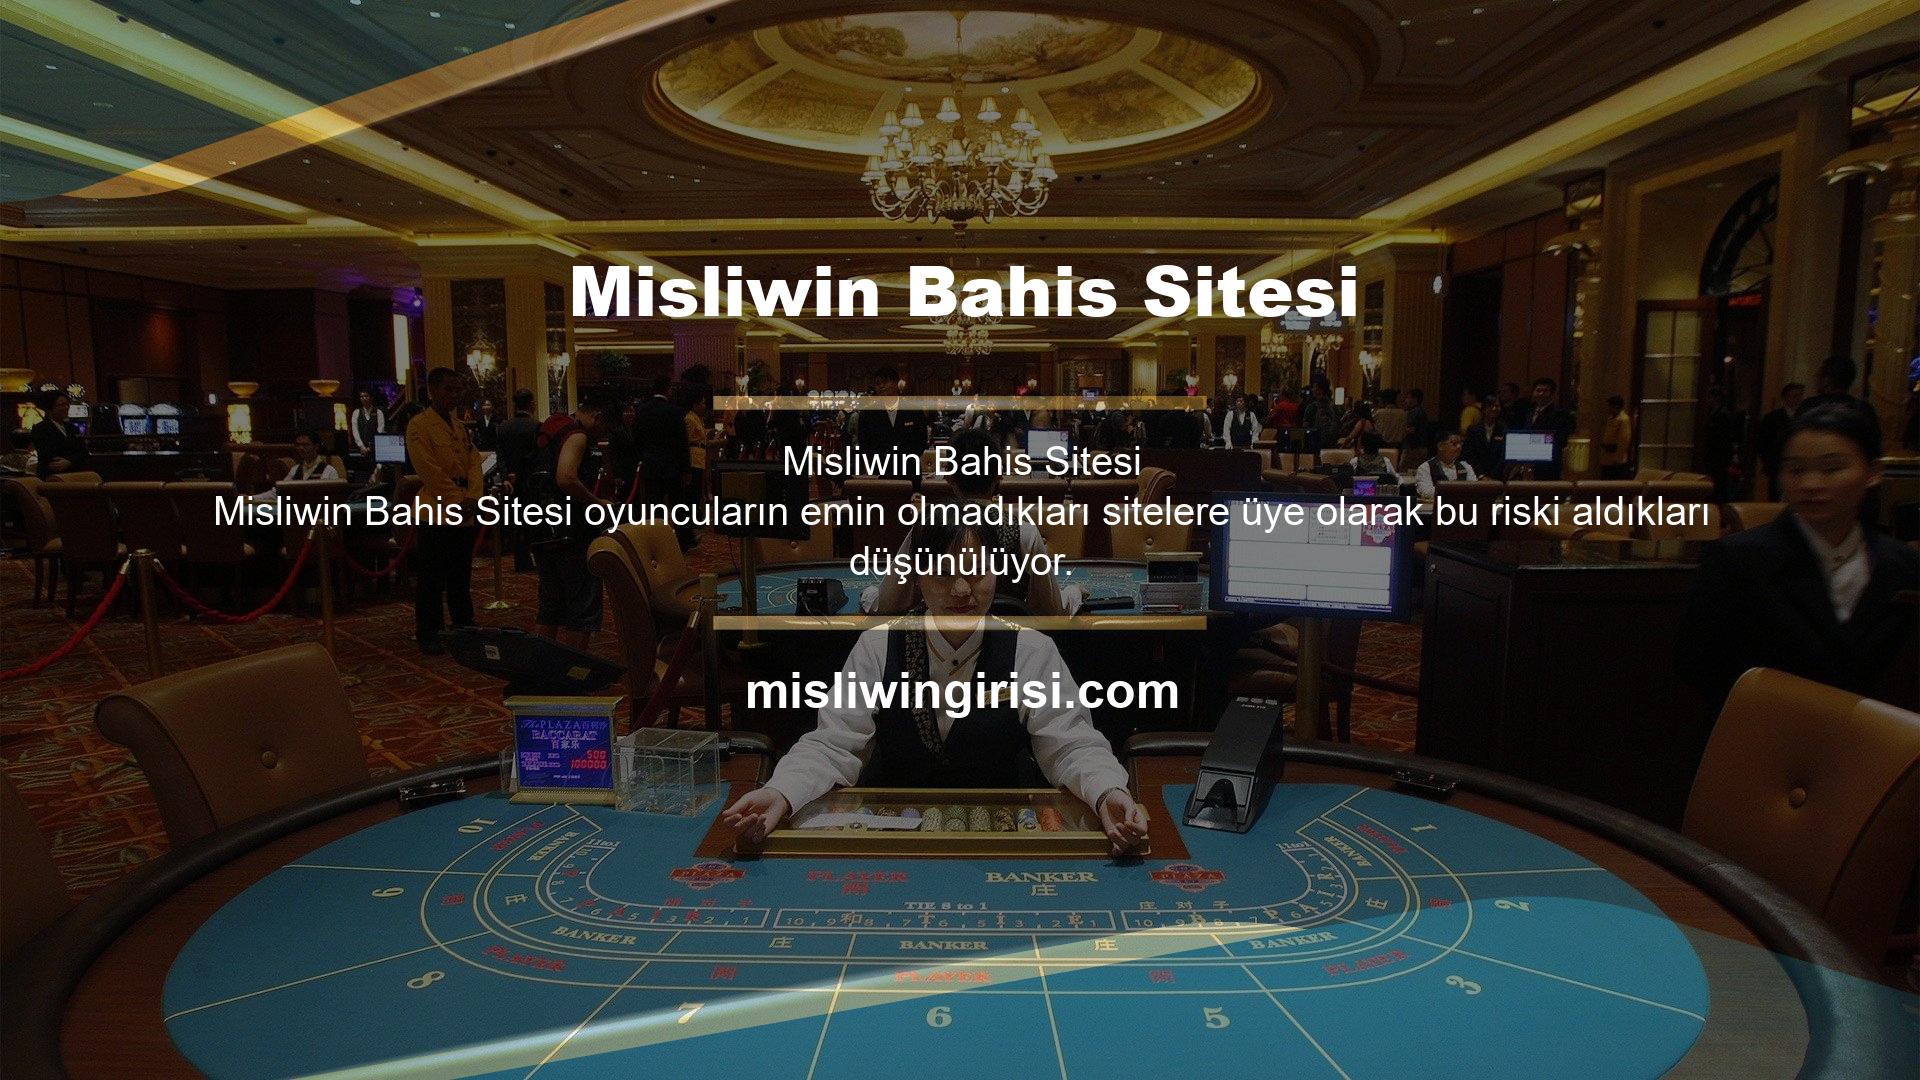 Misliwin Bahis'te tanımlı fırsatlardan yararlanmak için site üzerinden tanımlı fırsatlardan yararlanabilir ve kayıt işlemini tamamladıktan sonra sitenin ana sayfasında yer alan kayıt linkine tıklayarak ek gelir elde edebilirsiniz